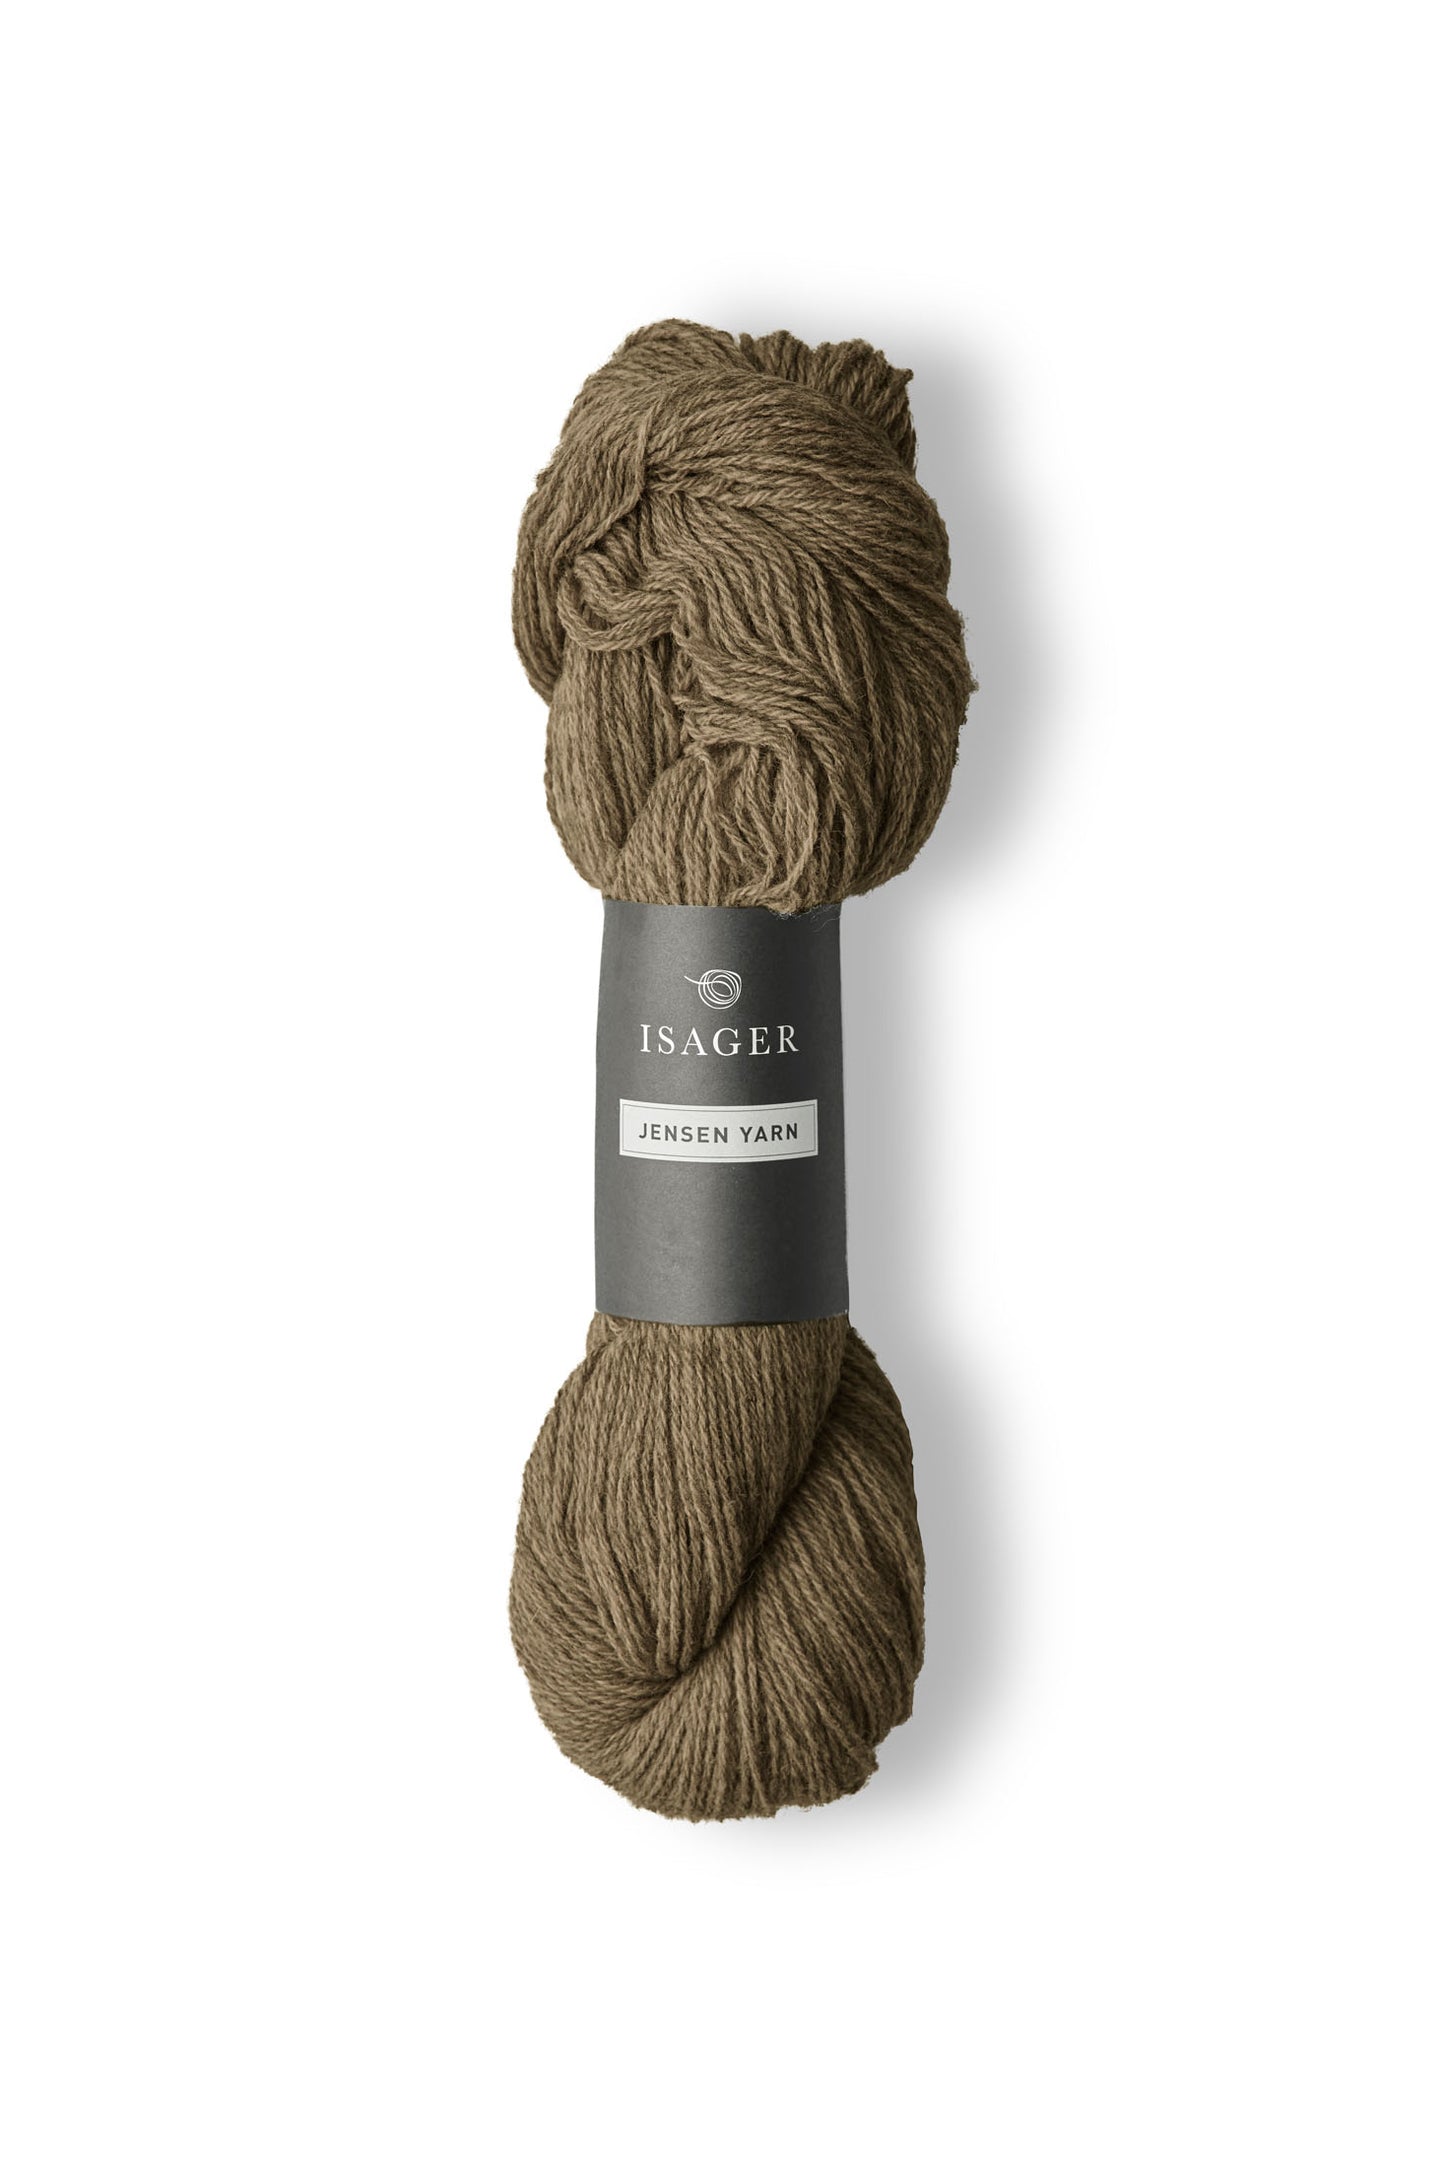 Jensen Yarn fra Isager er et lækkert uldgarn til en pind 4-5 mm, strikkefasthed ca. 20 m. Eller ca. 16 m strikket sammen med en silk mohair.